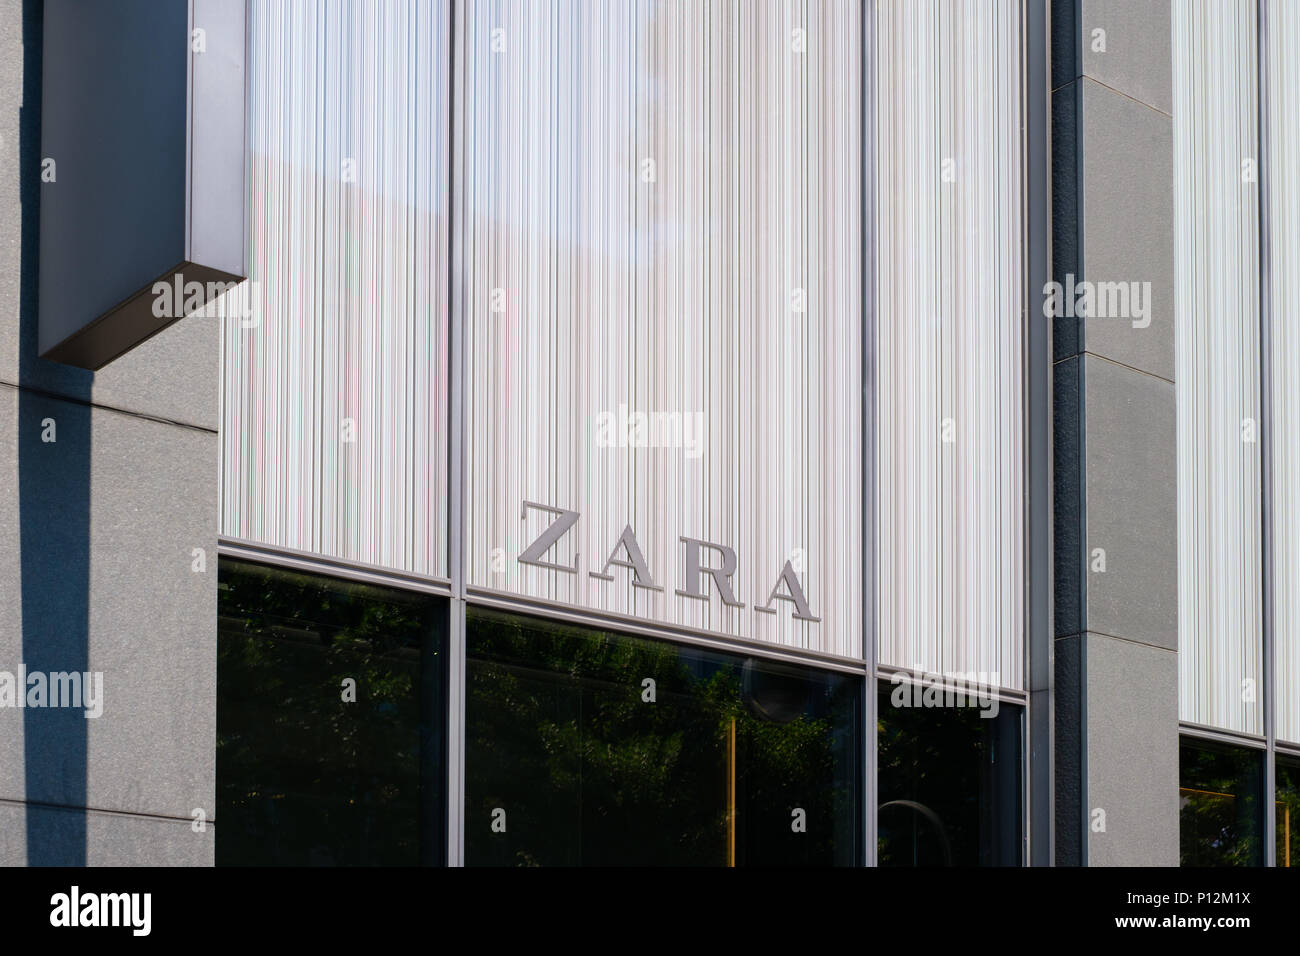 Berlin, Deutschland - Juni 09, 2018: Das Logo/Marke Zara am shop Fassade  Fassade in Berlin, Deutschland. Zara ist eine spanische Mode, Kleidung und  Stockfotografie - Alamy